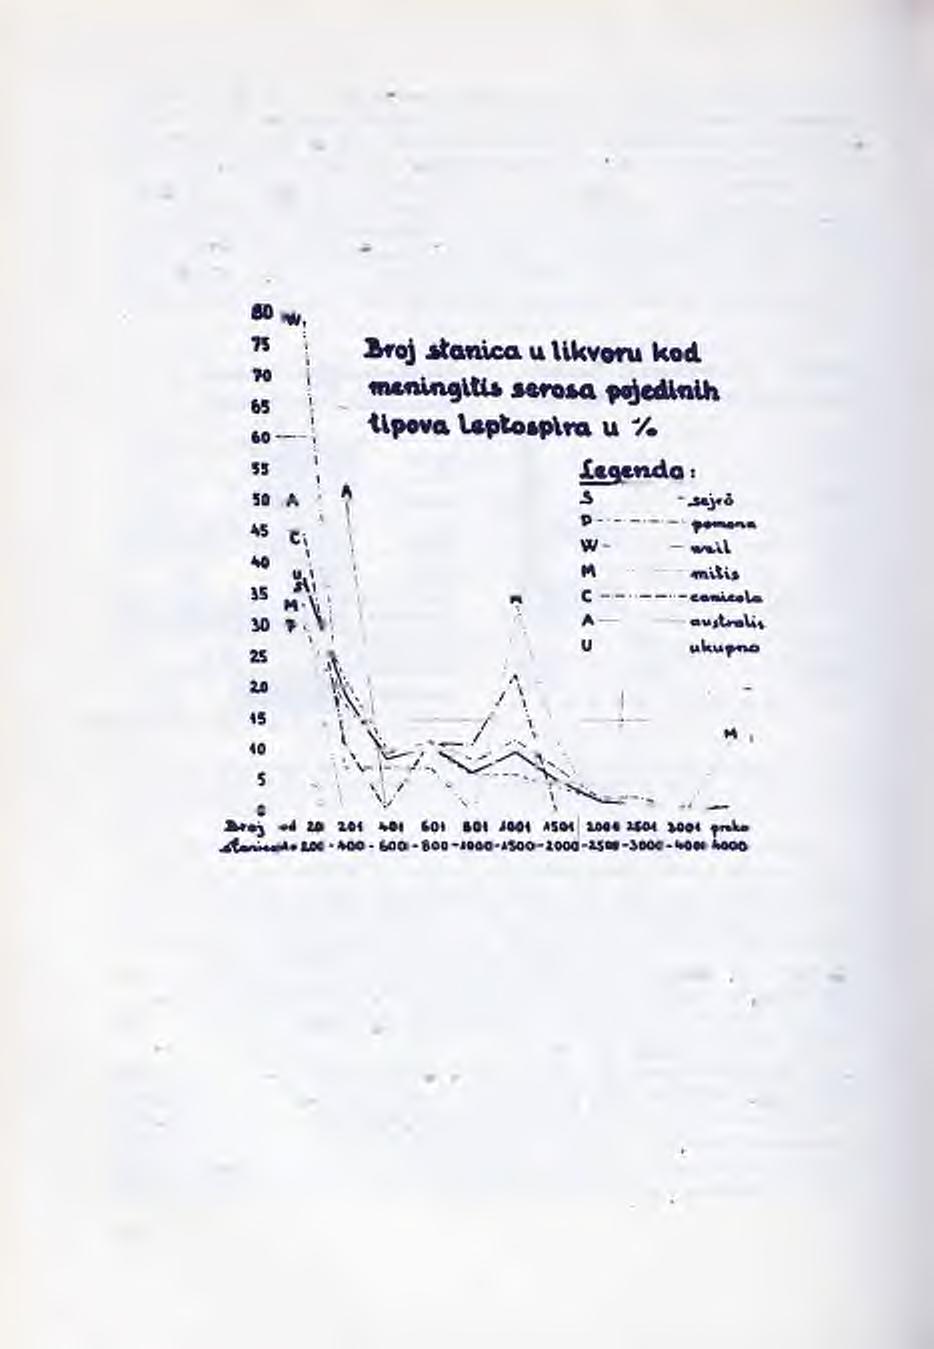 šen, samo iznimno snižen. Broj stranica kretao se najčešće od 20-2000/ 3. U jednom slučajiu ill. miitis (ihyos) nađeno je 4100/3, auli. sejiroe 4280/3.